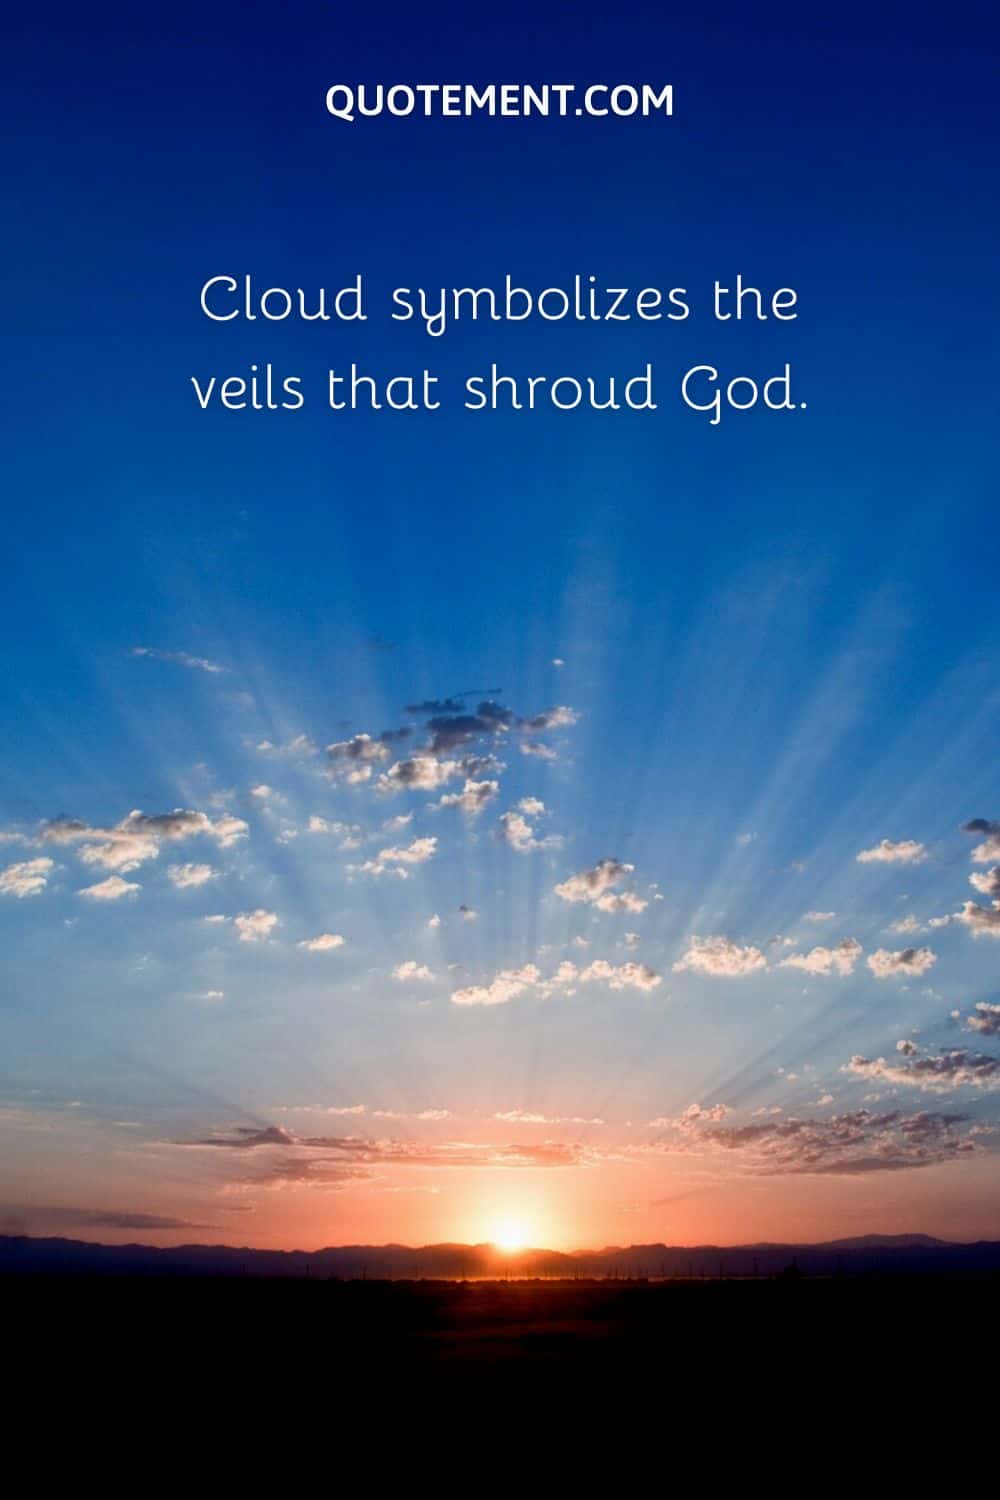 Cloud symbolizes the veils that shroud God.